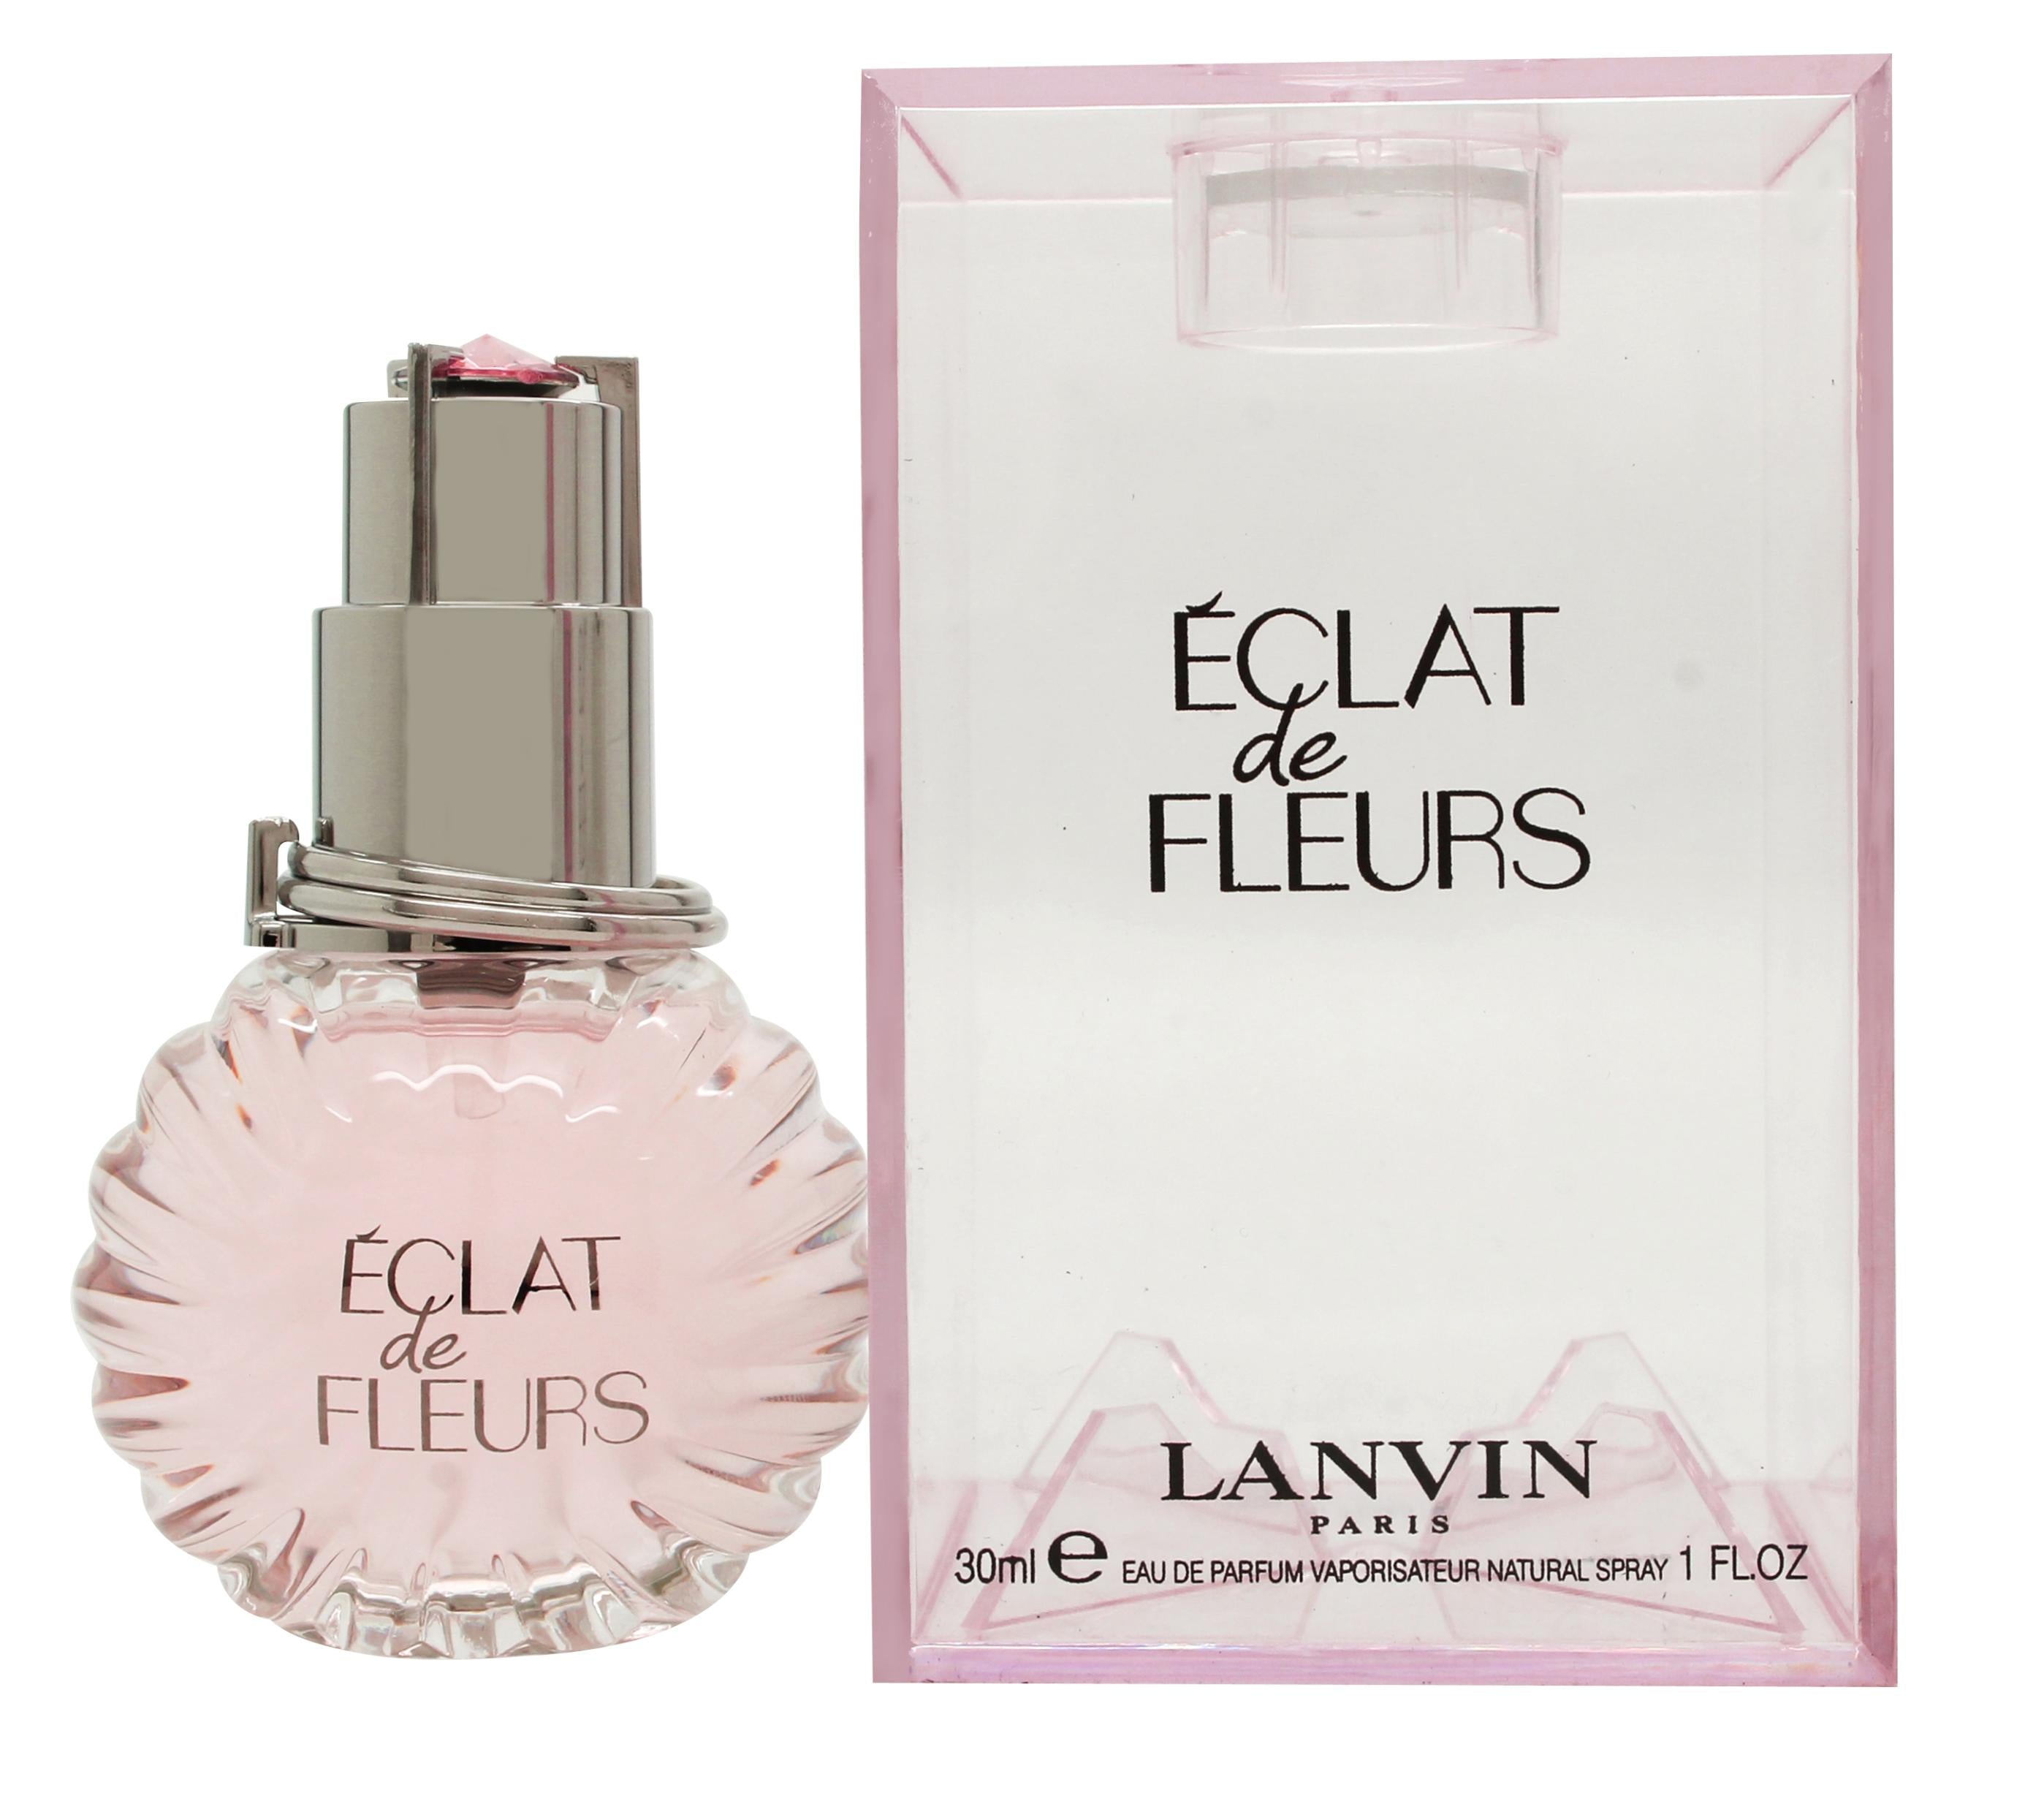 View Lanvin Eclat de Fleurs Eau de Parfum 30ml Spray information